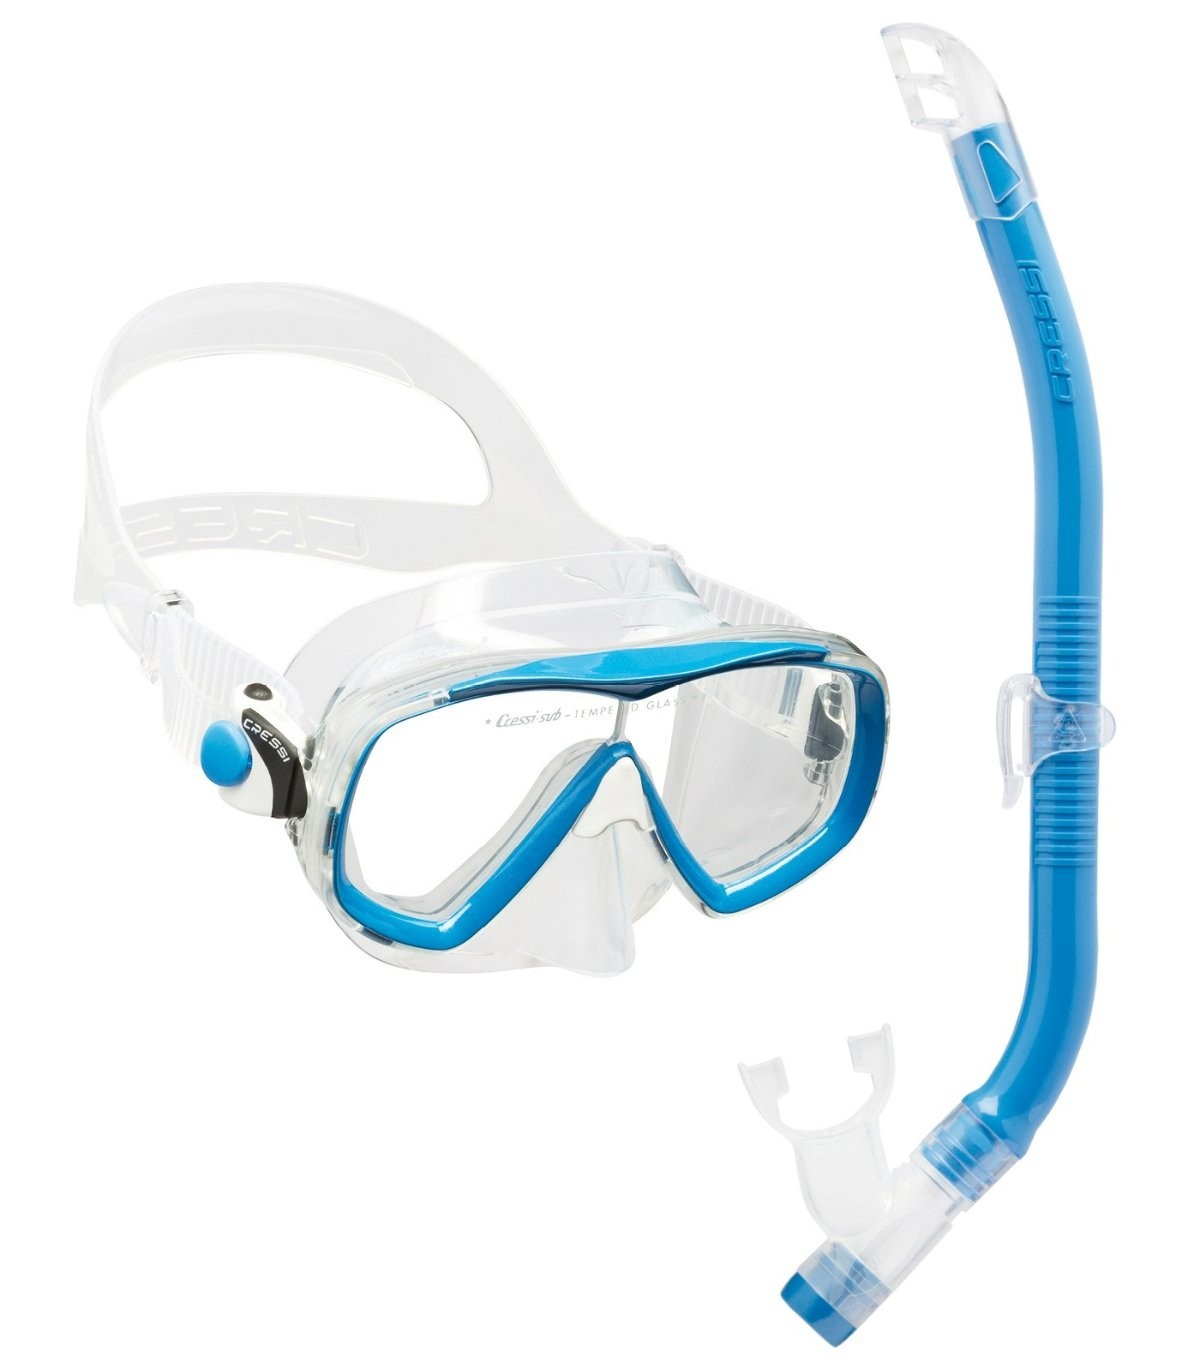 PALAU KIT. El perfecto para snorkel al mejor precio.